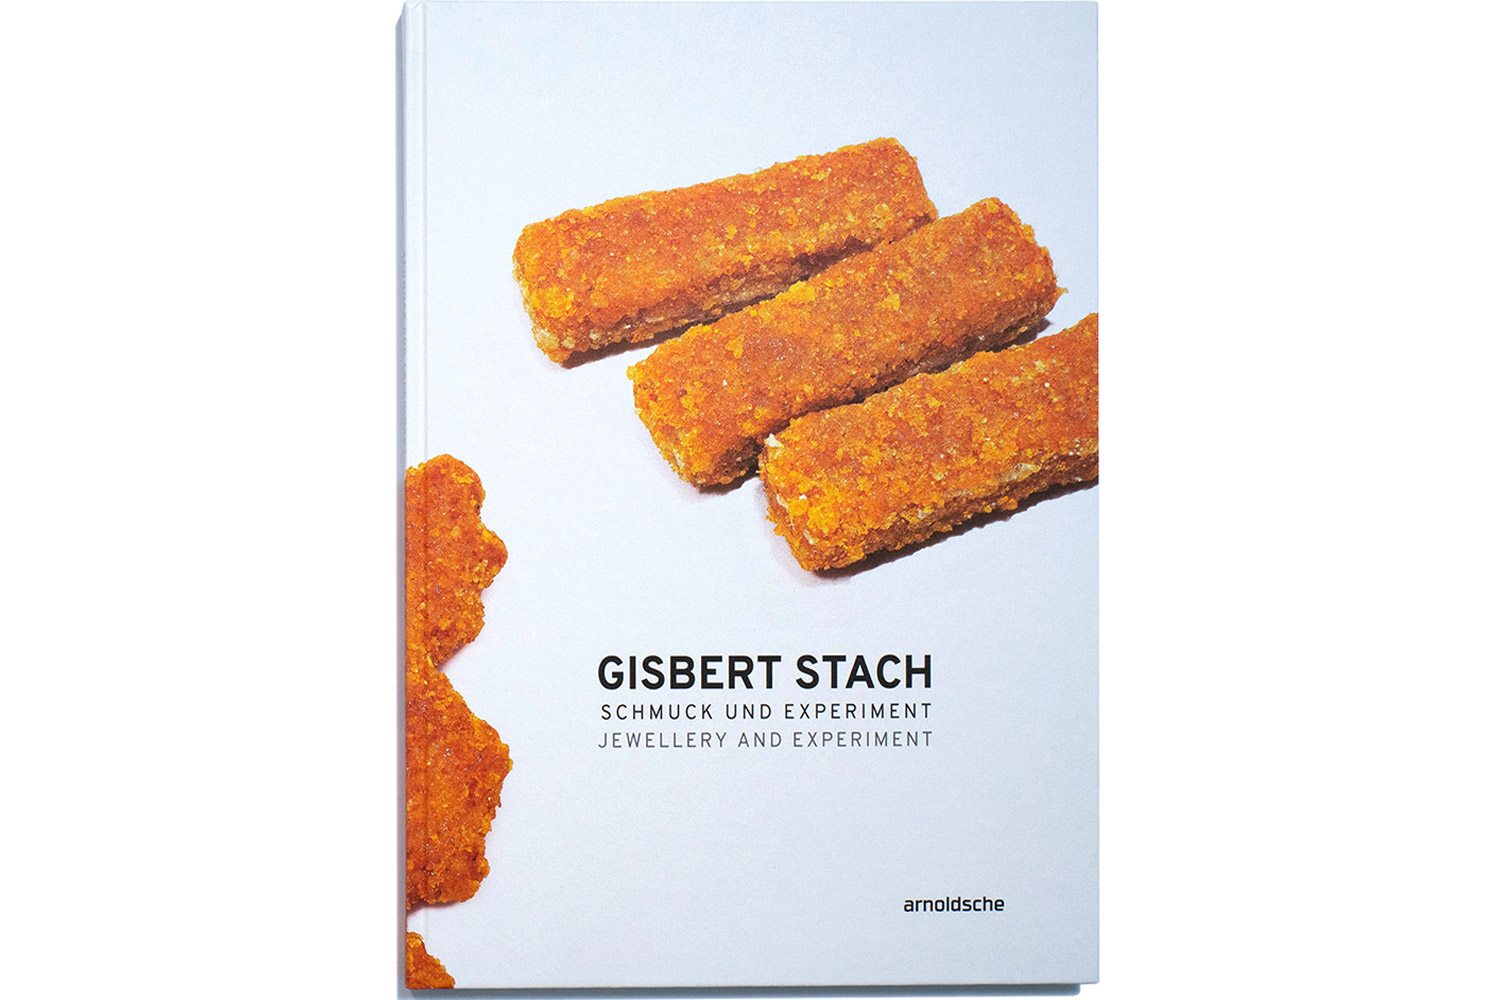 gisbert stach book catalogue cover 2018